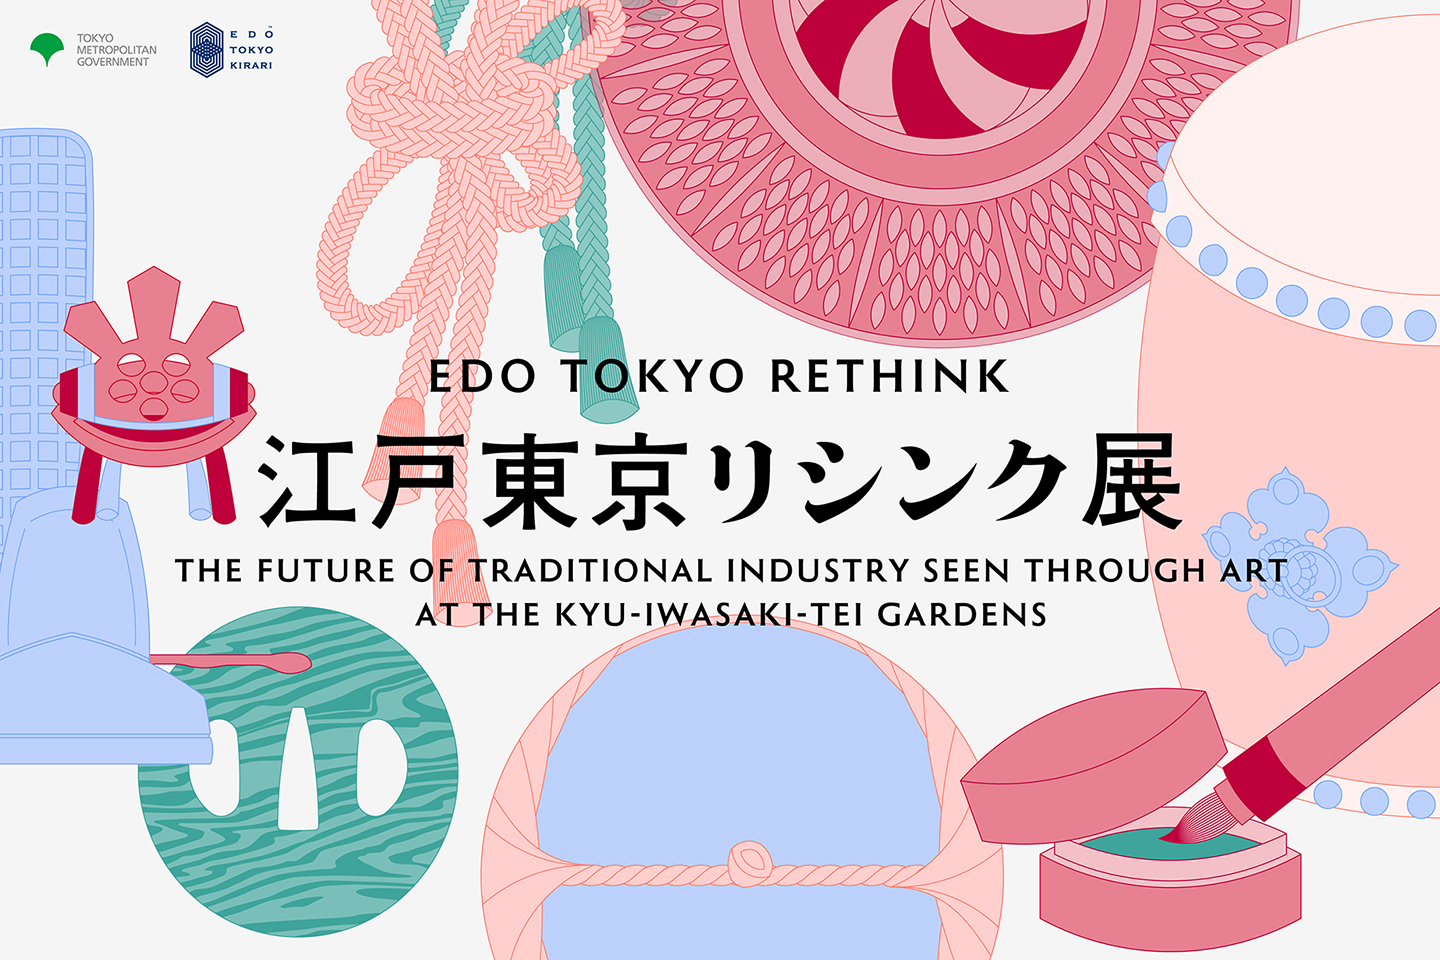 [Edo Tokyo Rethink]Le site spécial est maintenant ouvert